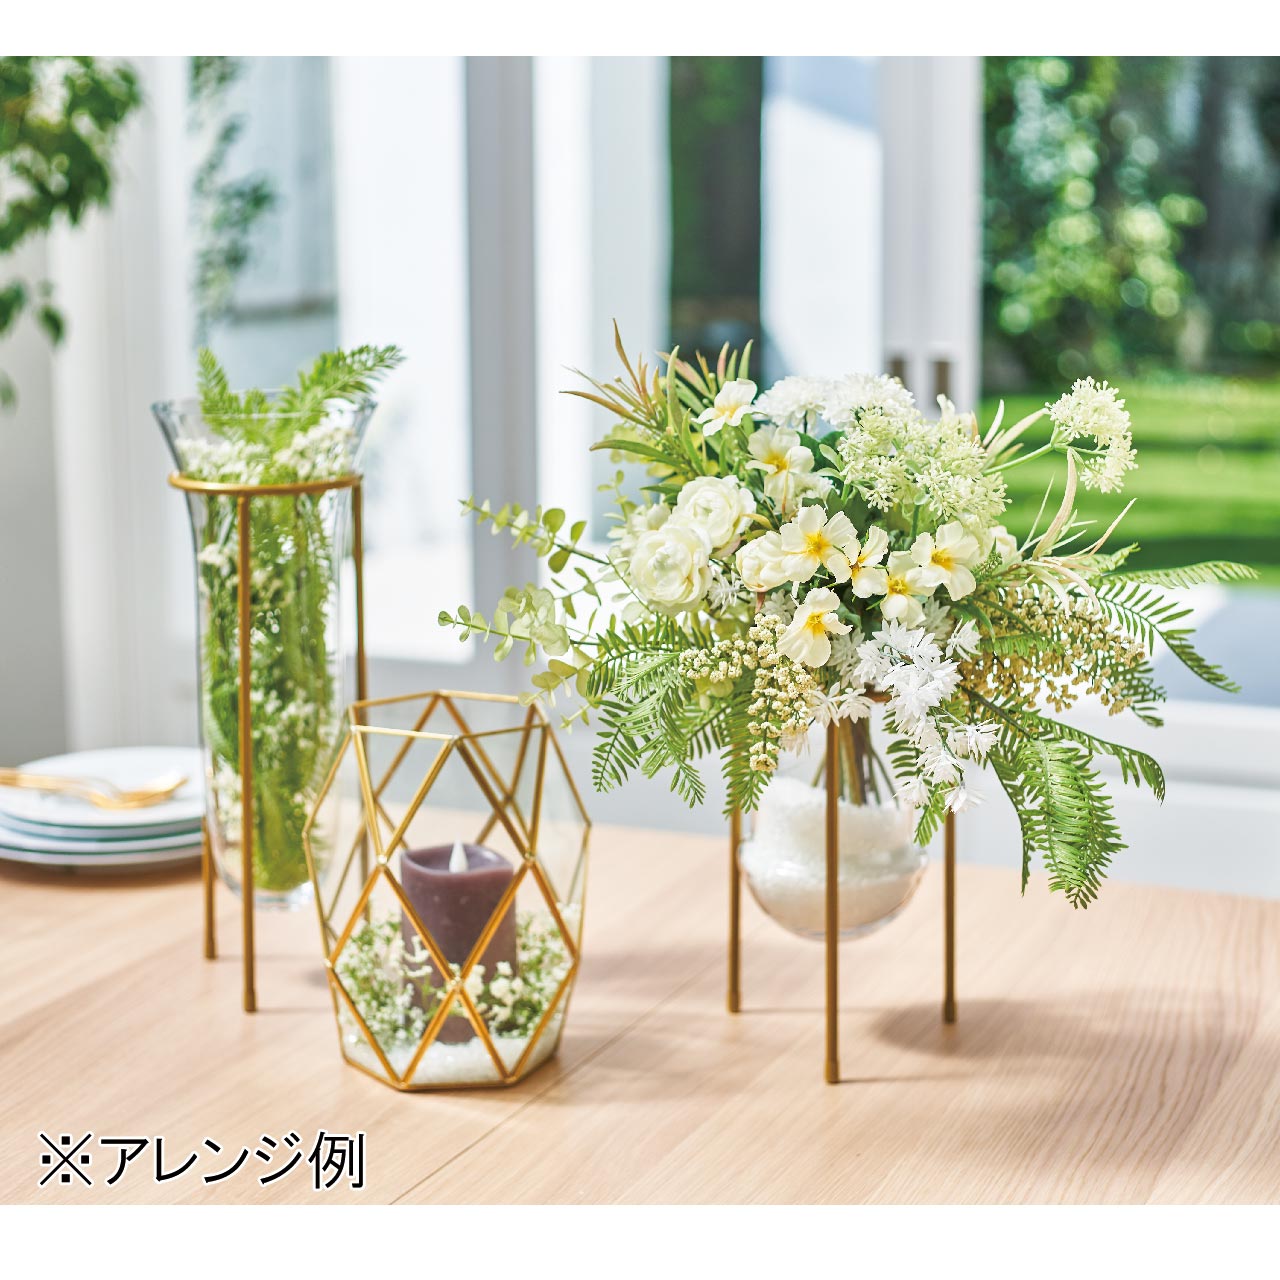 マイフラ】 通販/クルースゴールド 花器 ガラス 花瓶 GG023040(直径 約20×高さ 約26cm): 花器・花瓶 ・フレーム・天然素材ベース/全国にMAGIQ、花器、花資材などをお届けします。